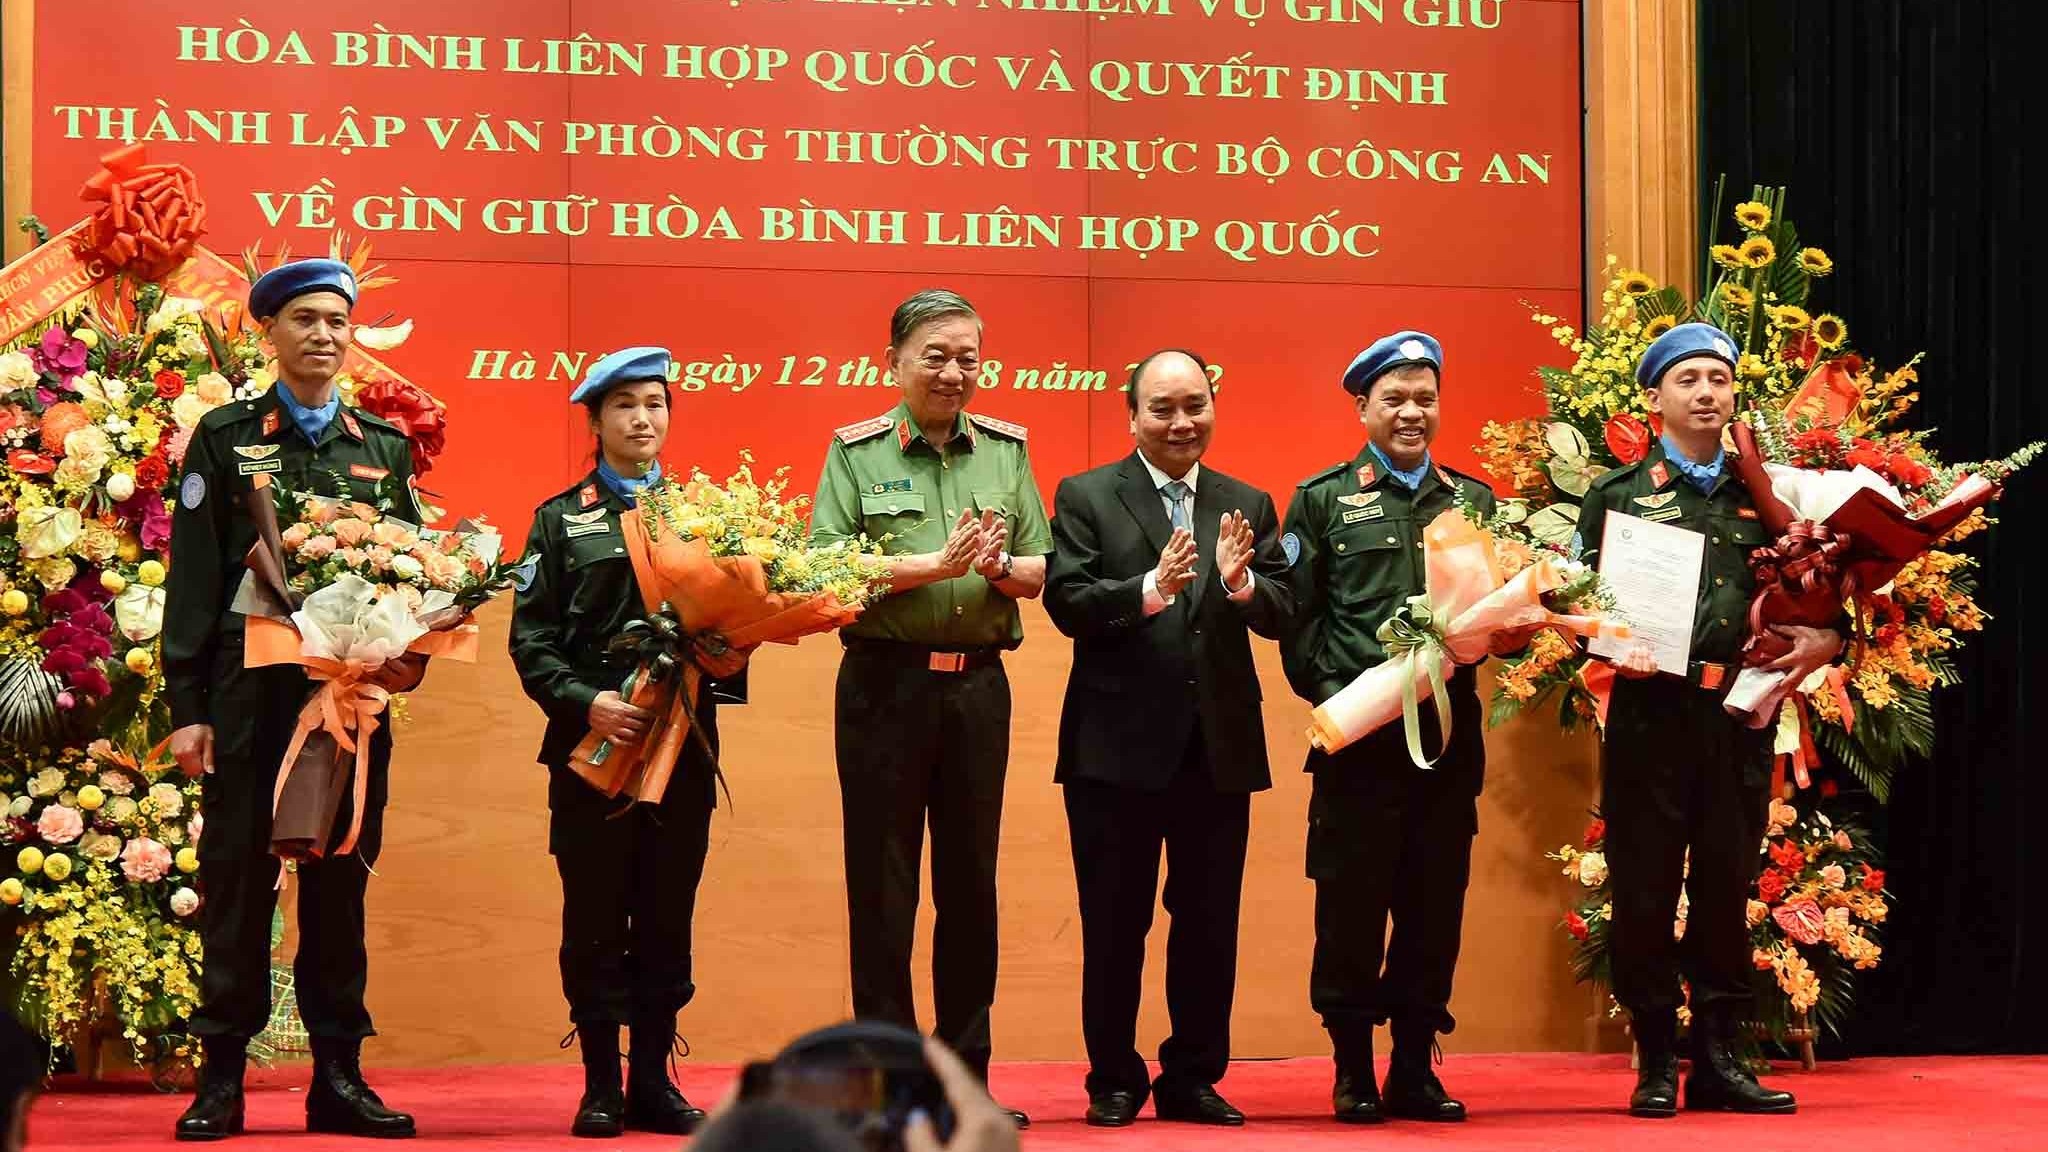 Việt Nam lần đầu cử sĩ quan công an nhân dân tham gia hoạt động gìn giữ hoà bình Liên hợp quốc